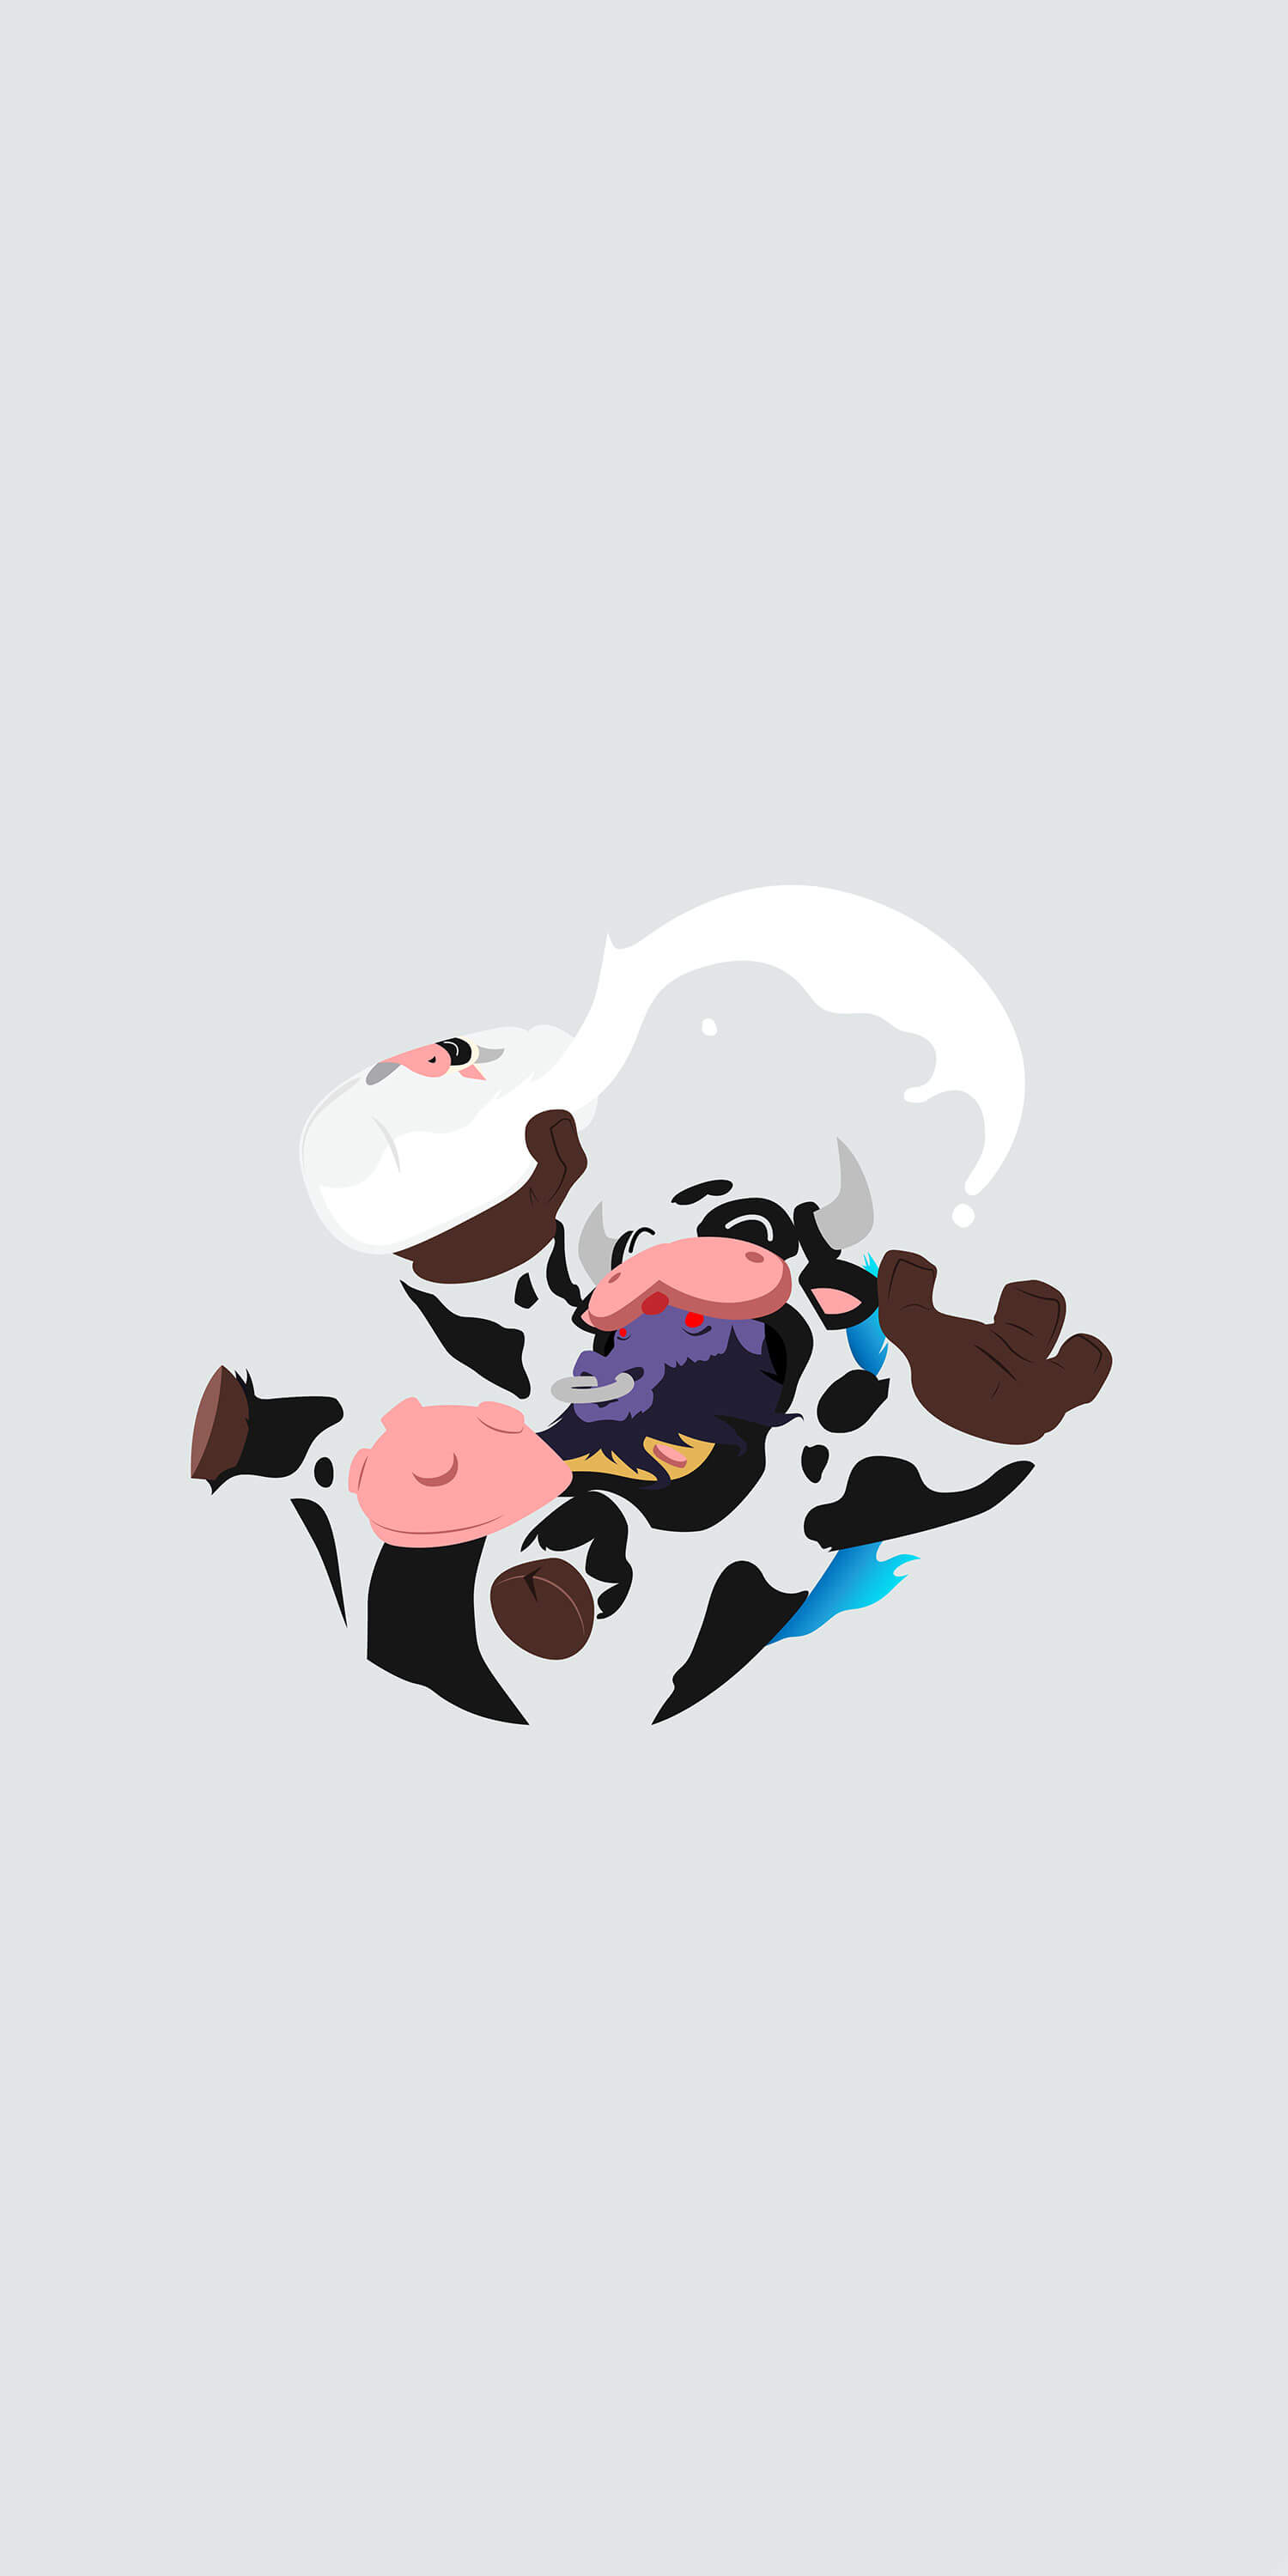 Xem hình nền bò sữa cute, ảnh bò sữa cute để thưởng thức những bức ảnh đầy màu sắc và vui tươi. Chúng ta sẽ bị cuốn hút bởi sự ngọt ngào và dễ thương của con bò sữa, tạo cho chúng ta cảm giác vui mừng và hạnh phúc.